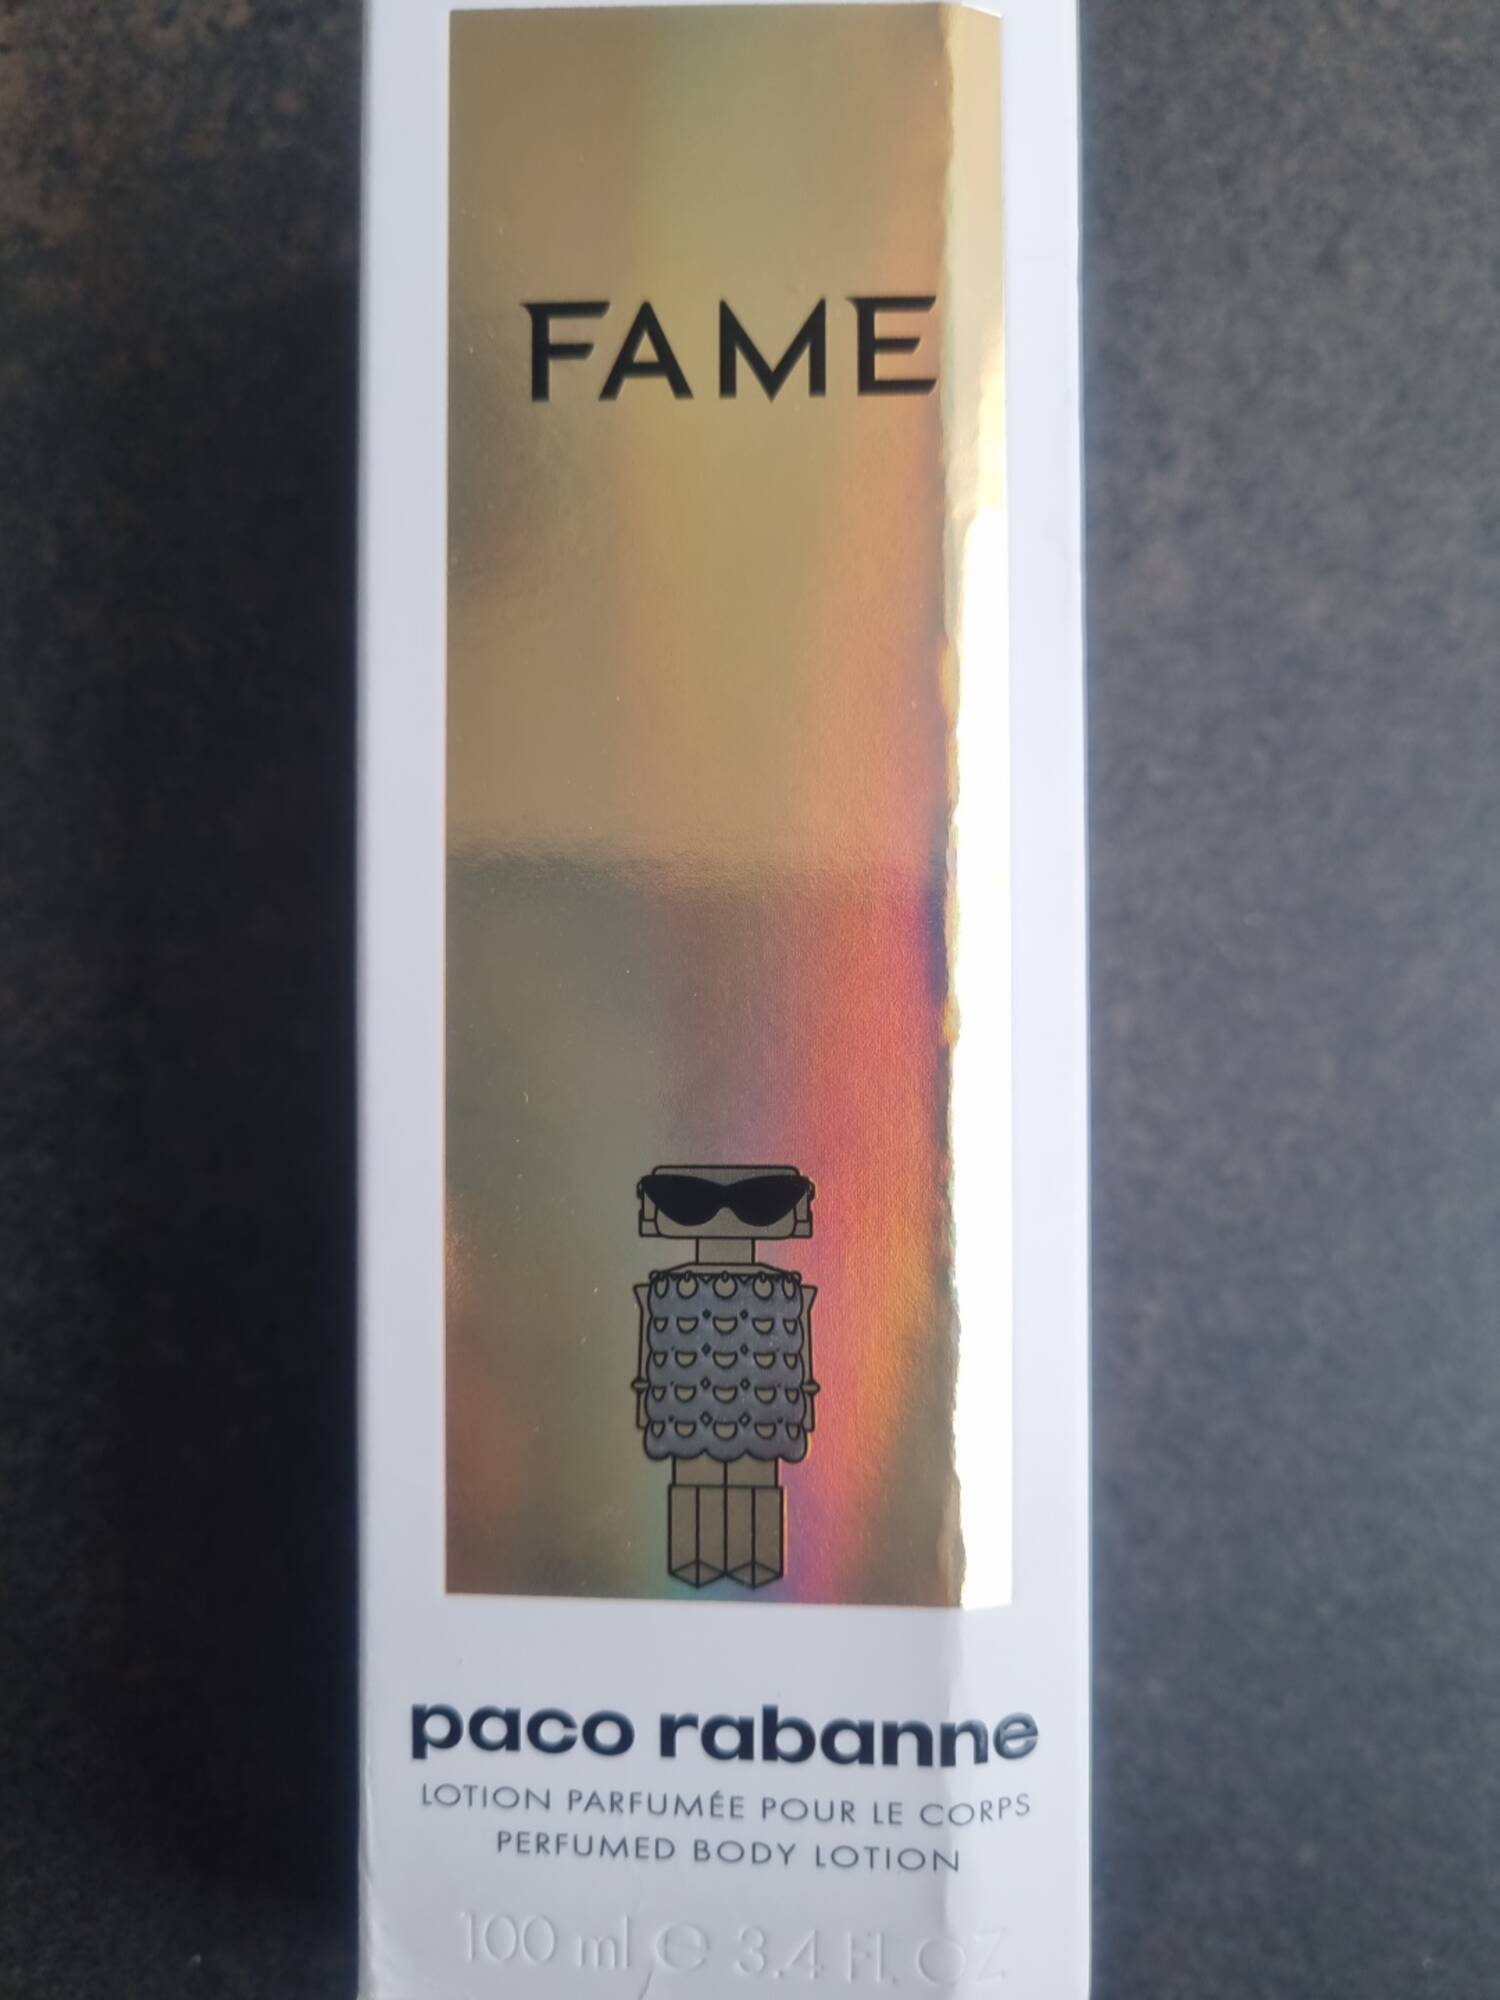 PACO RABANNE - Fame - Lotion parfumée pour le corps